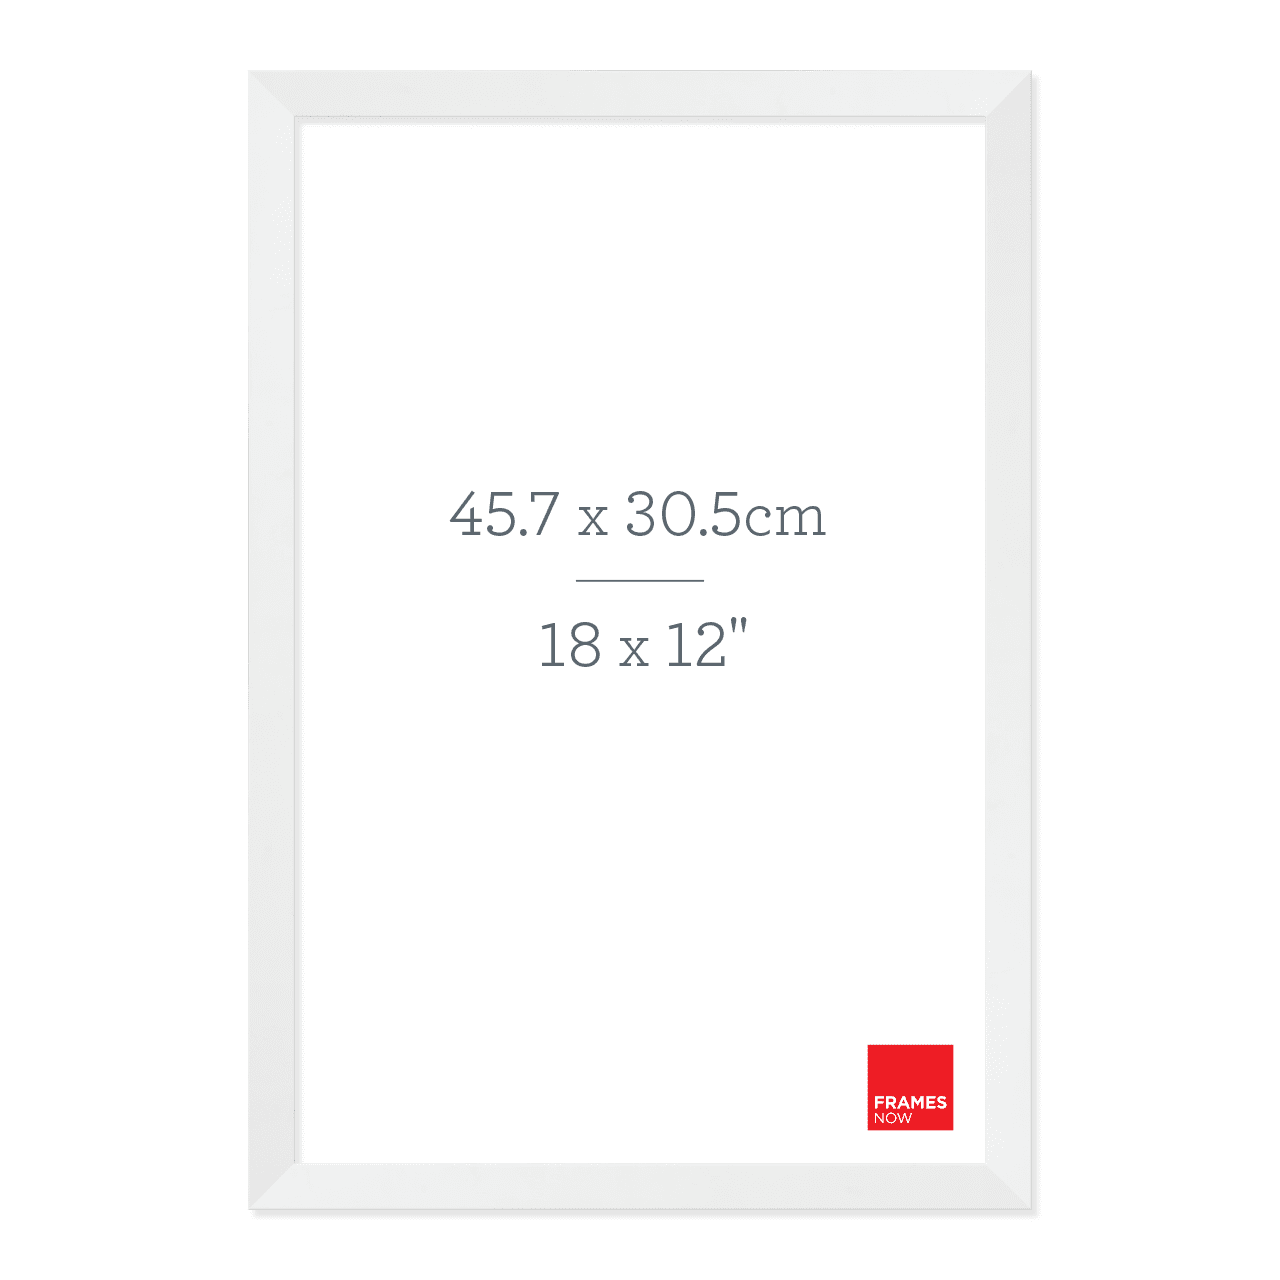 Premium Matte White Box Picture Frame for 45.7 x 30.5cm Artwork